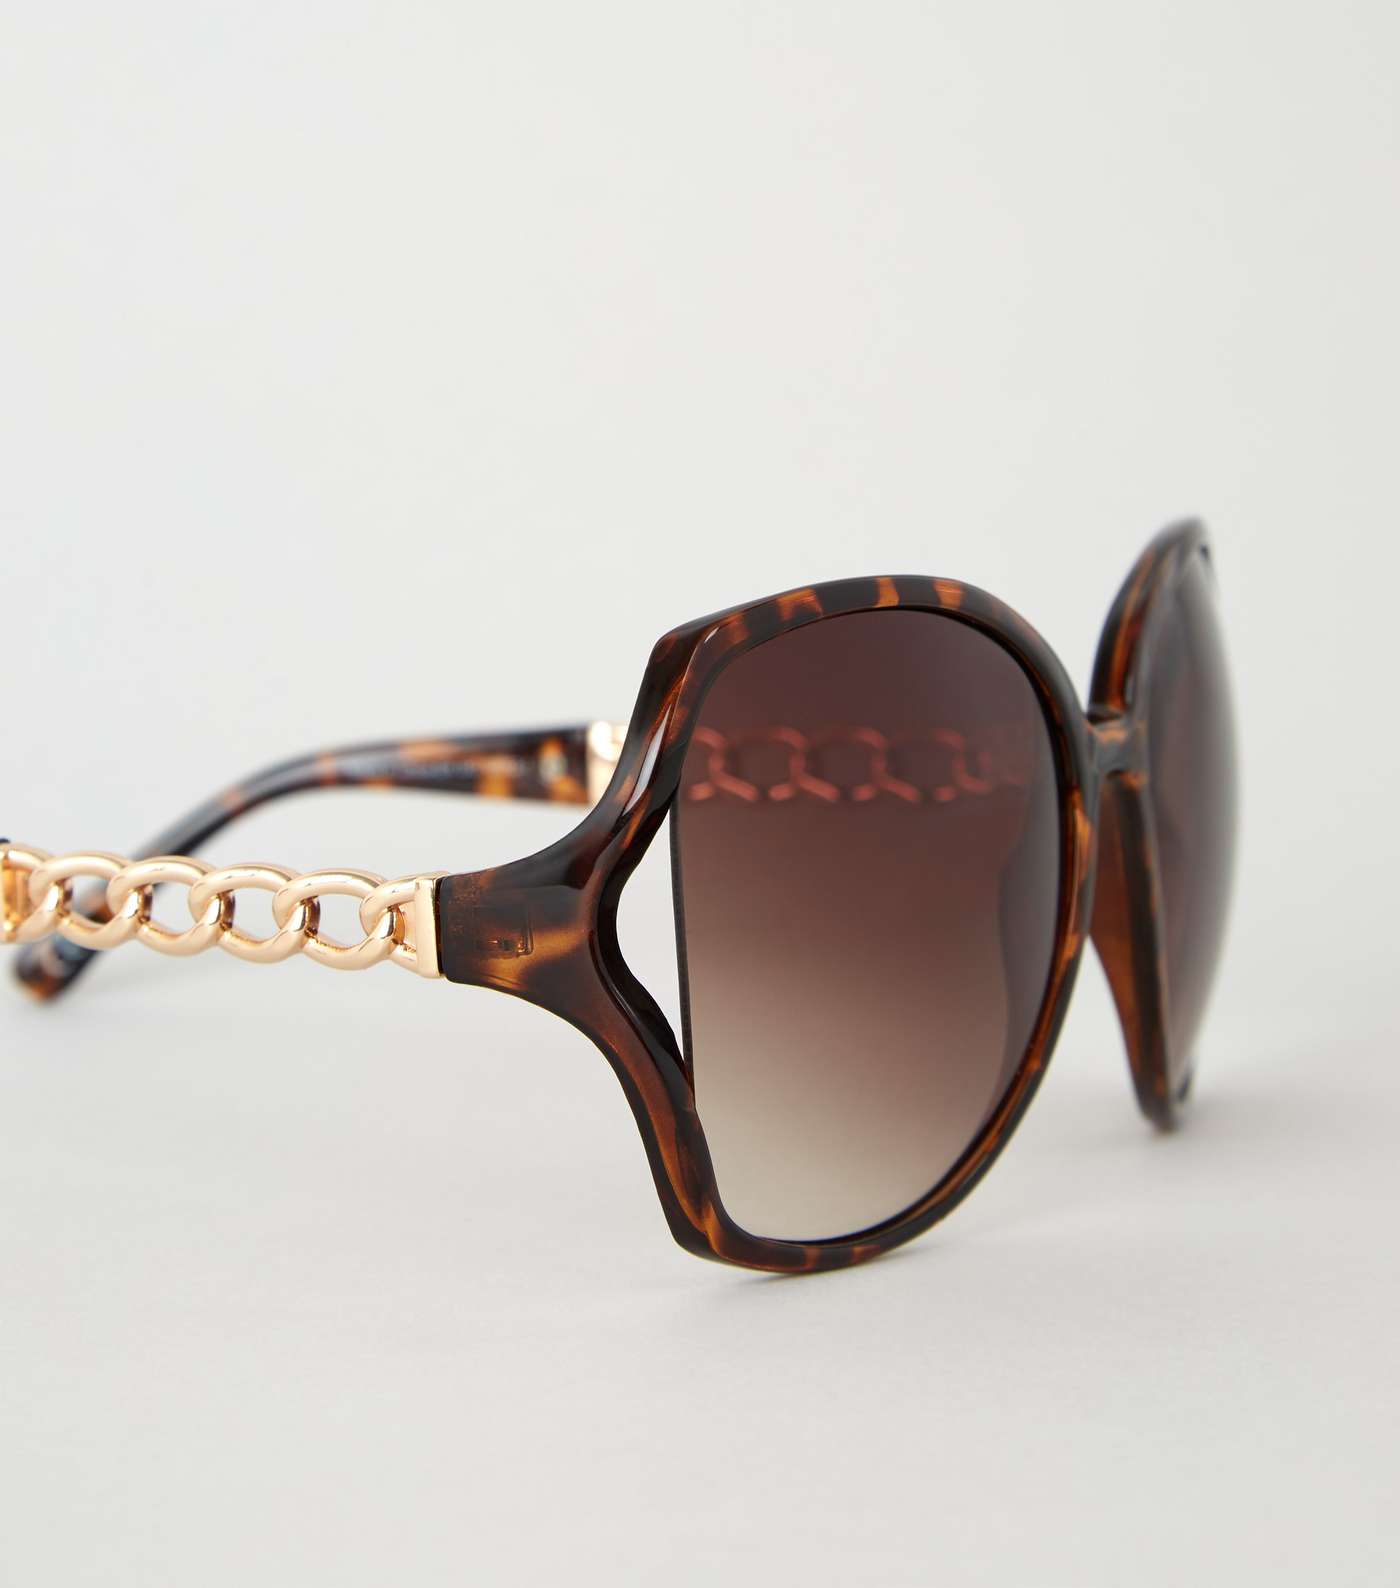 Dark Brown Tortoiseshell Effect Chain Sunglasses Image 4